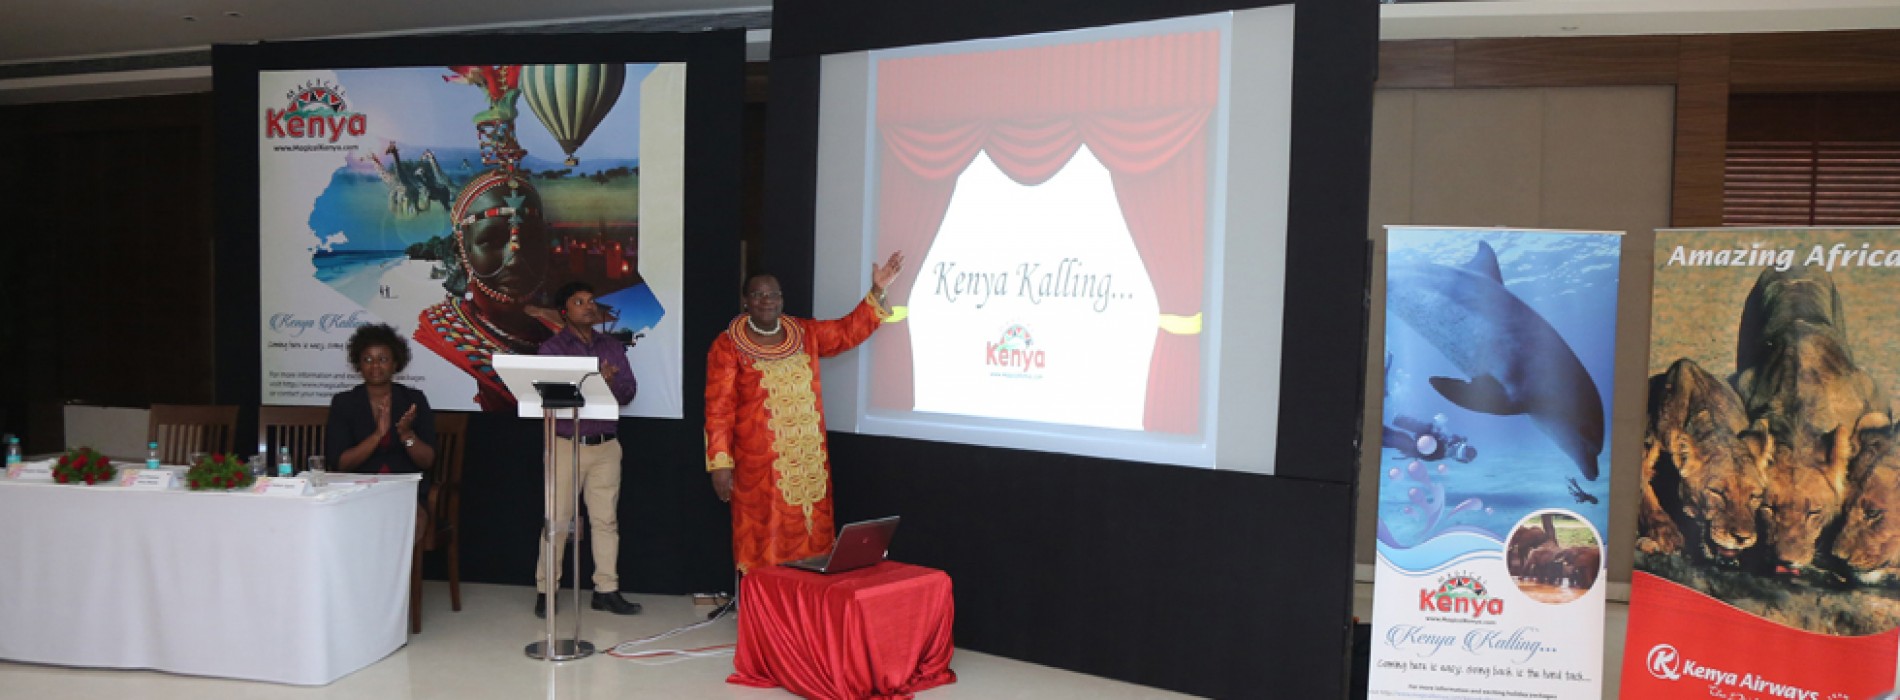 Kenya Kalling Campaign targets one lakh visitors